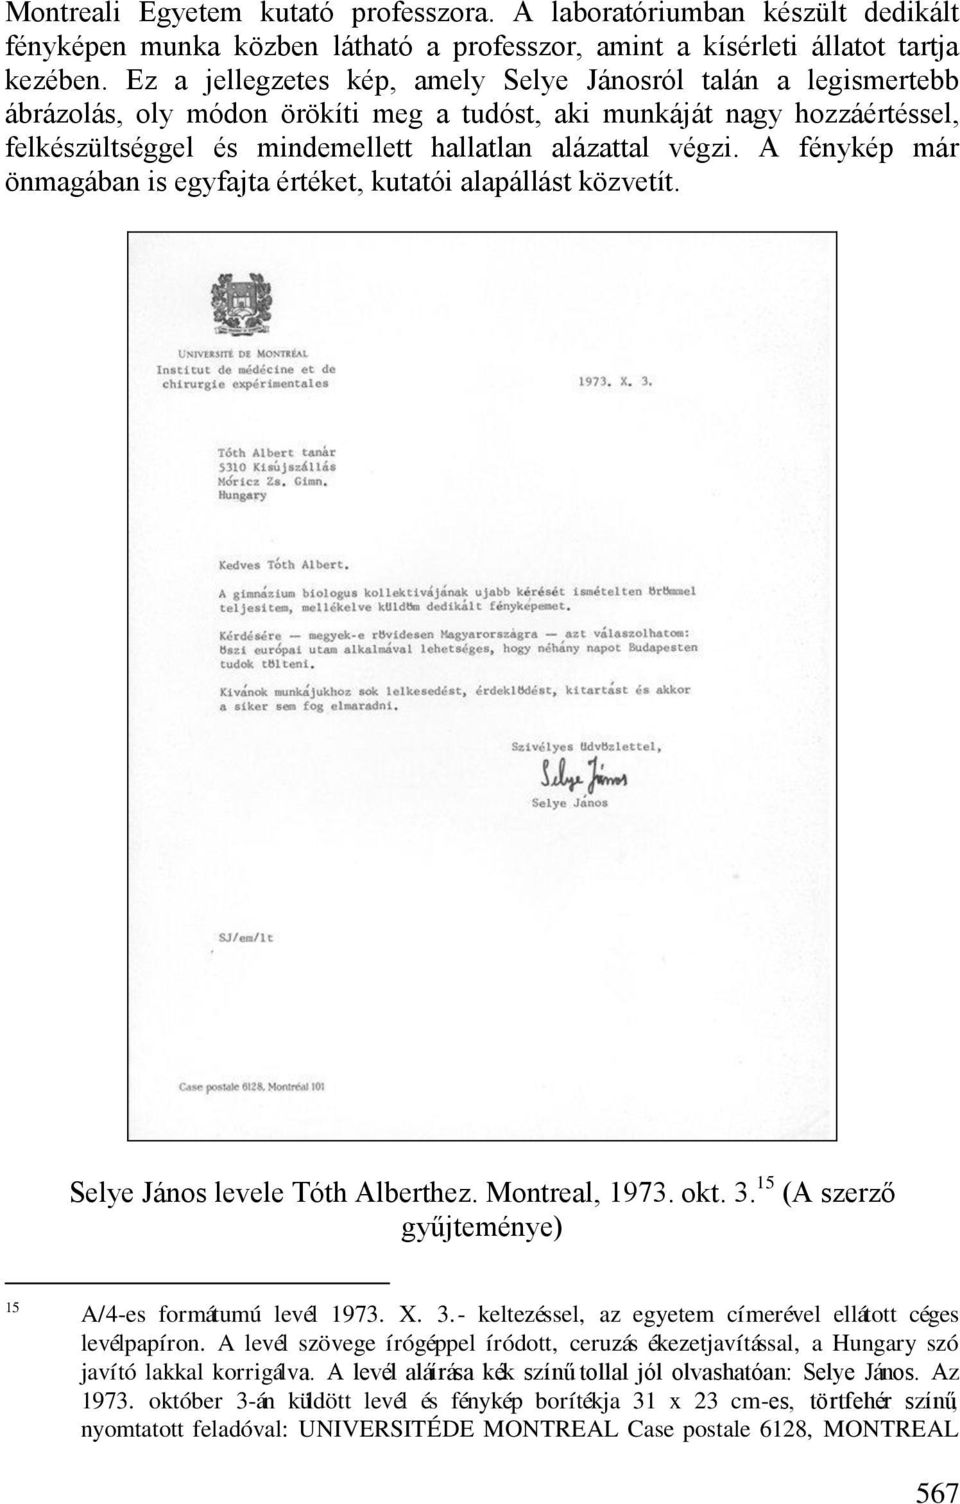 A fénykép már önmagában is egyfajta értéket, kutatói alapállást közvetít. Selye János levele Tóth Alberthez. Montreal, 1973. okt. 3. 15 (A szerző gyűjteménye) 15 A/4-es formátumú levél 1973. X. 3.- keltezéssel, az egyetem címerével ellátott céges levélpapíron.